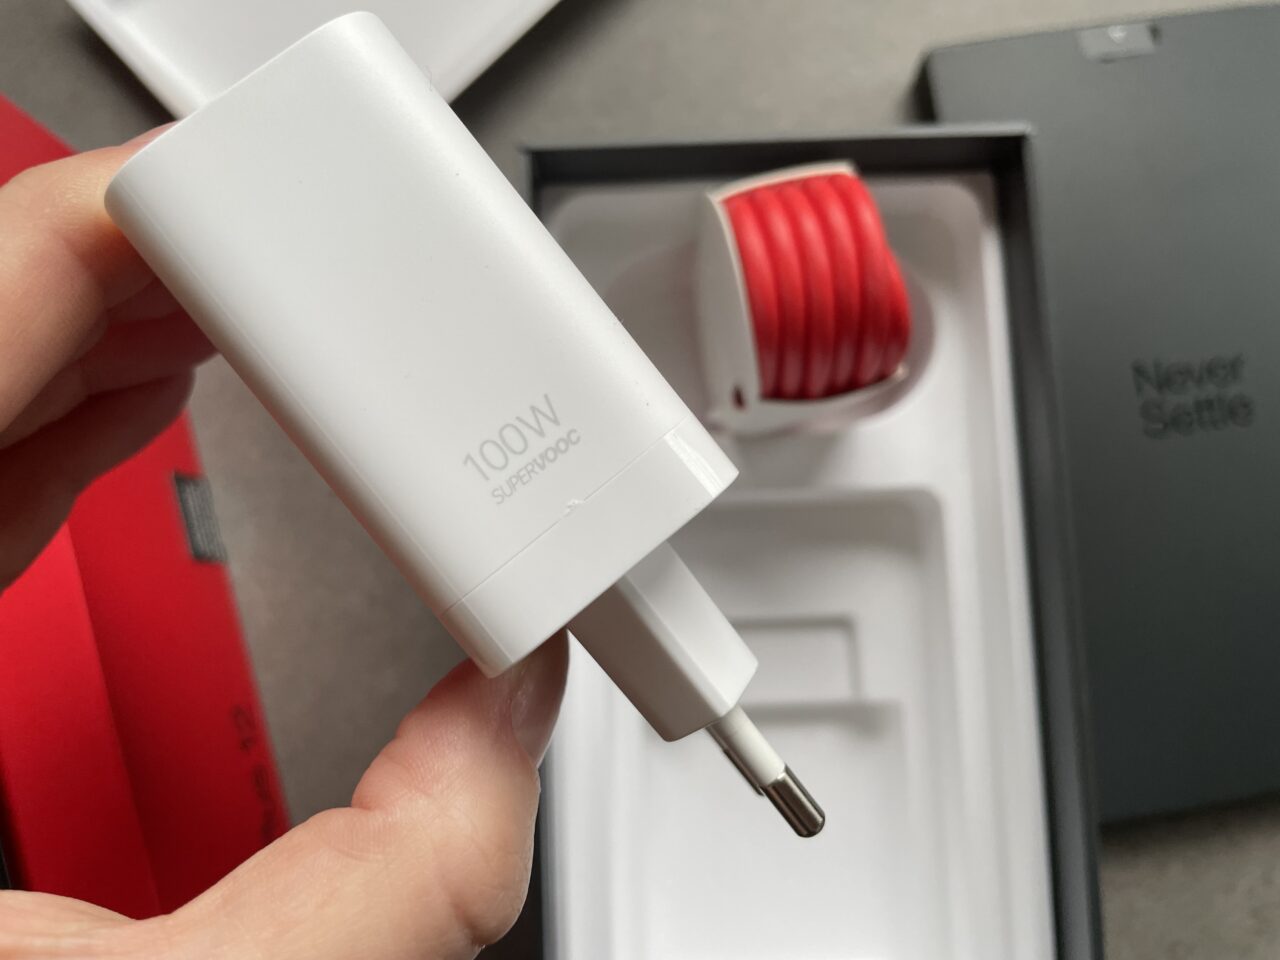 Biała ładowarka sieciowa 100W trzymana w dłoni nad otwartym pudełkiem z czerwonym przewodem USB i ciemnoszarym opakowaniem z napisem "Never Settle".